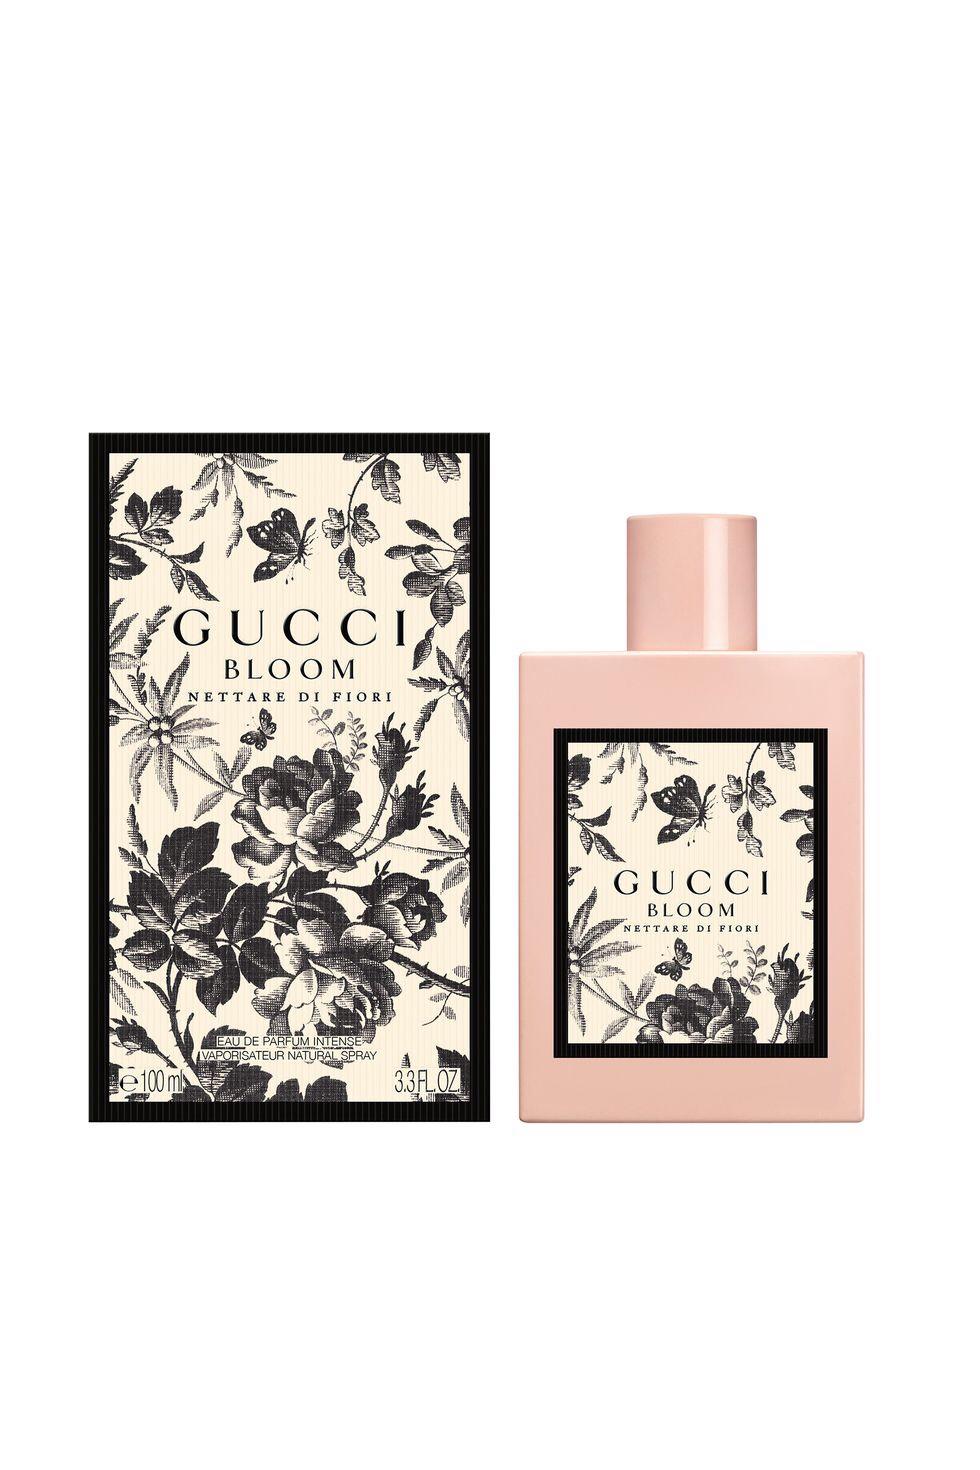 GUCCI Bloom Nettare di Fiori New Beauty August 2018